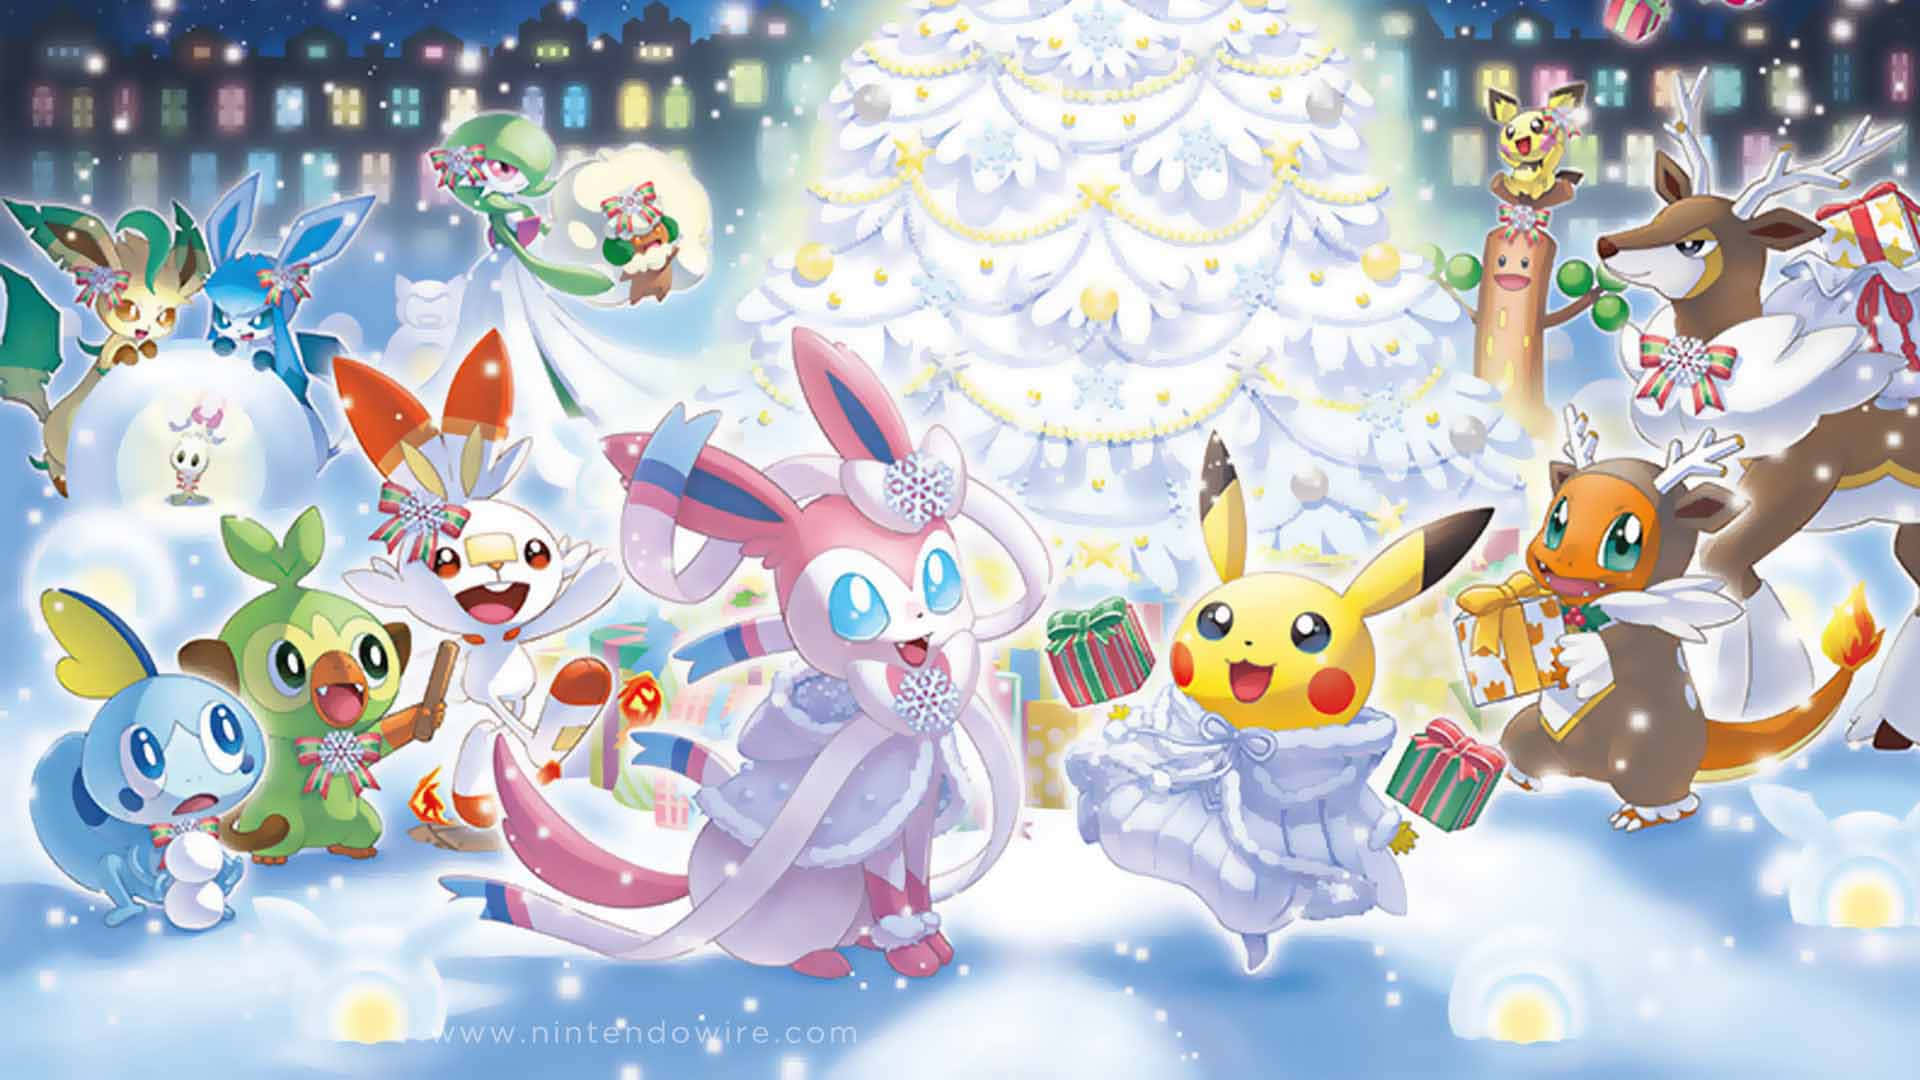 White-themed Pokémon Christmas Party Wallpaper